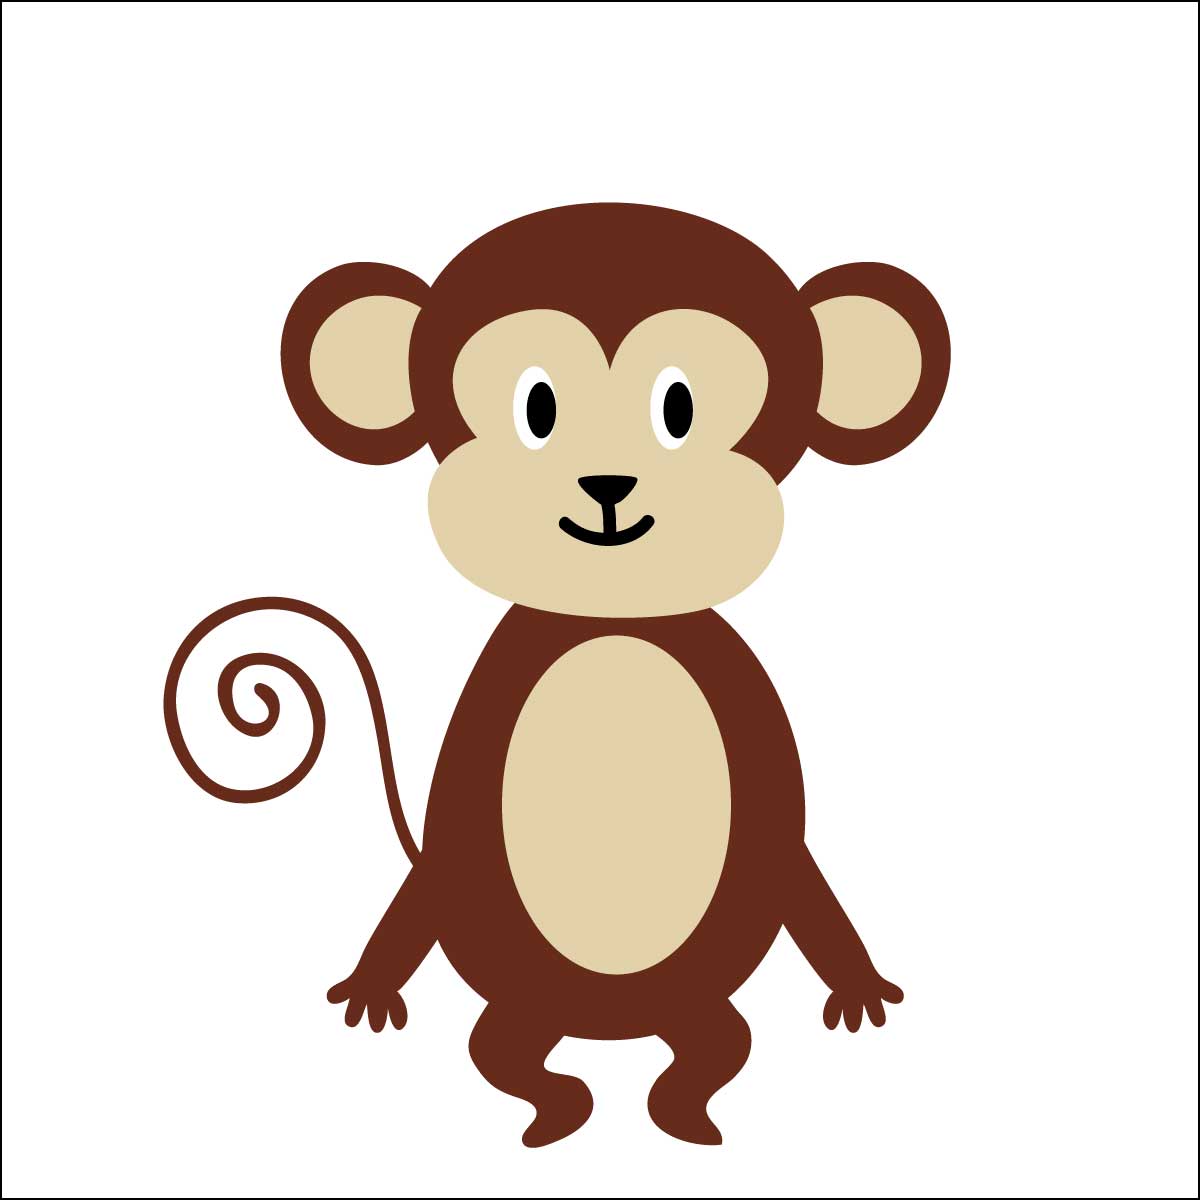 サルキャラクター人気ランキング 猿 チンパンジー オランウータンも 3 5位 ランキングー